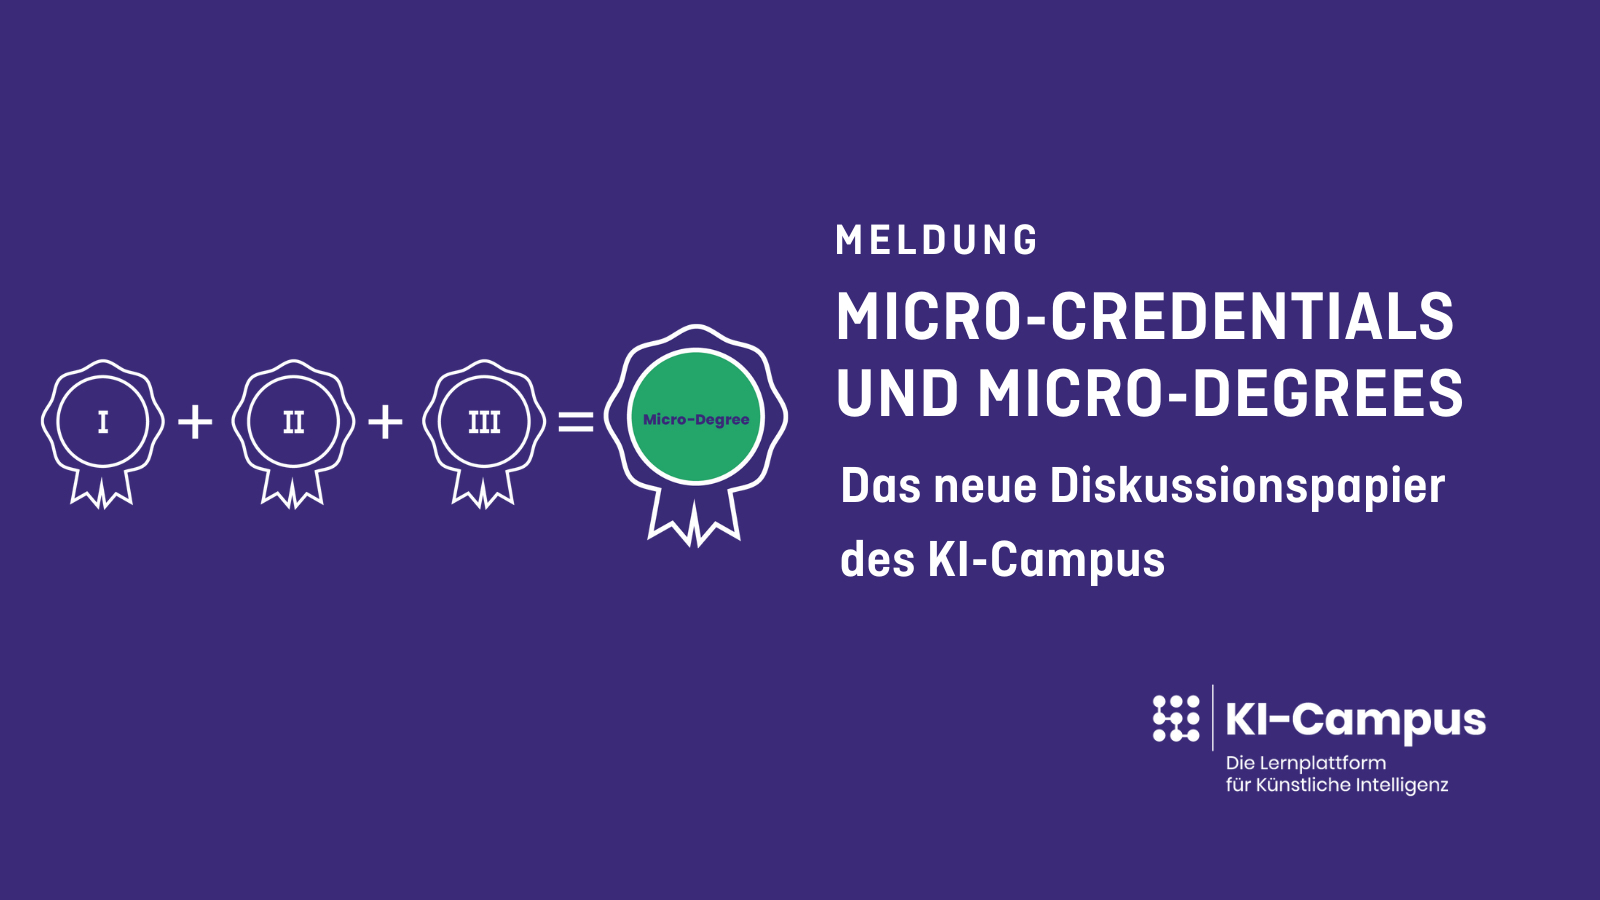 Auf auberginenfarbenden Hintergrund sthte in weißer Schrift: Meldung Micro-Credentials und Micro-Degrees Das neue Diskussionspapier des KI-Campus, In der unteren rechten Ecke befindet sich das KI-Campus-Logo